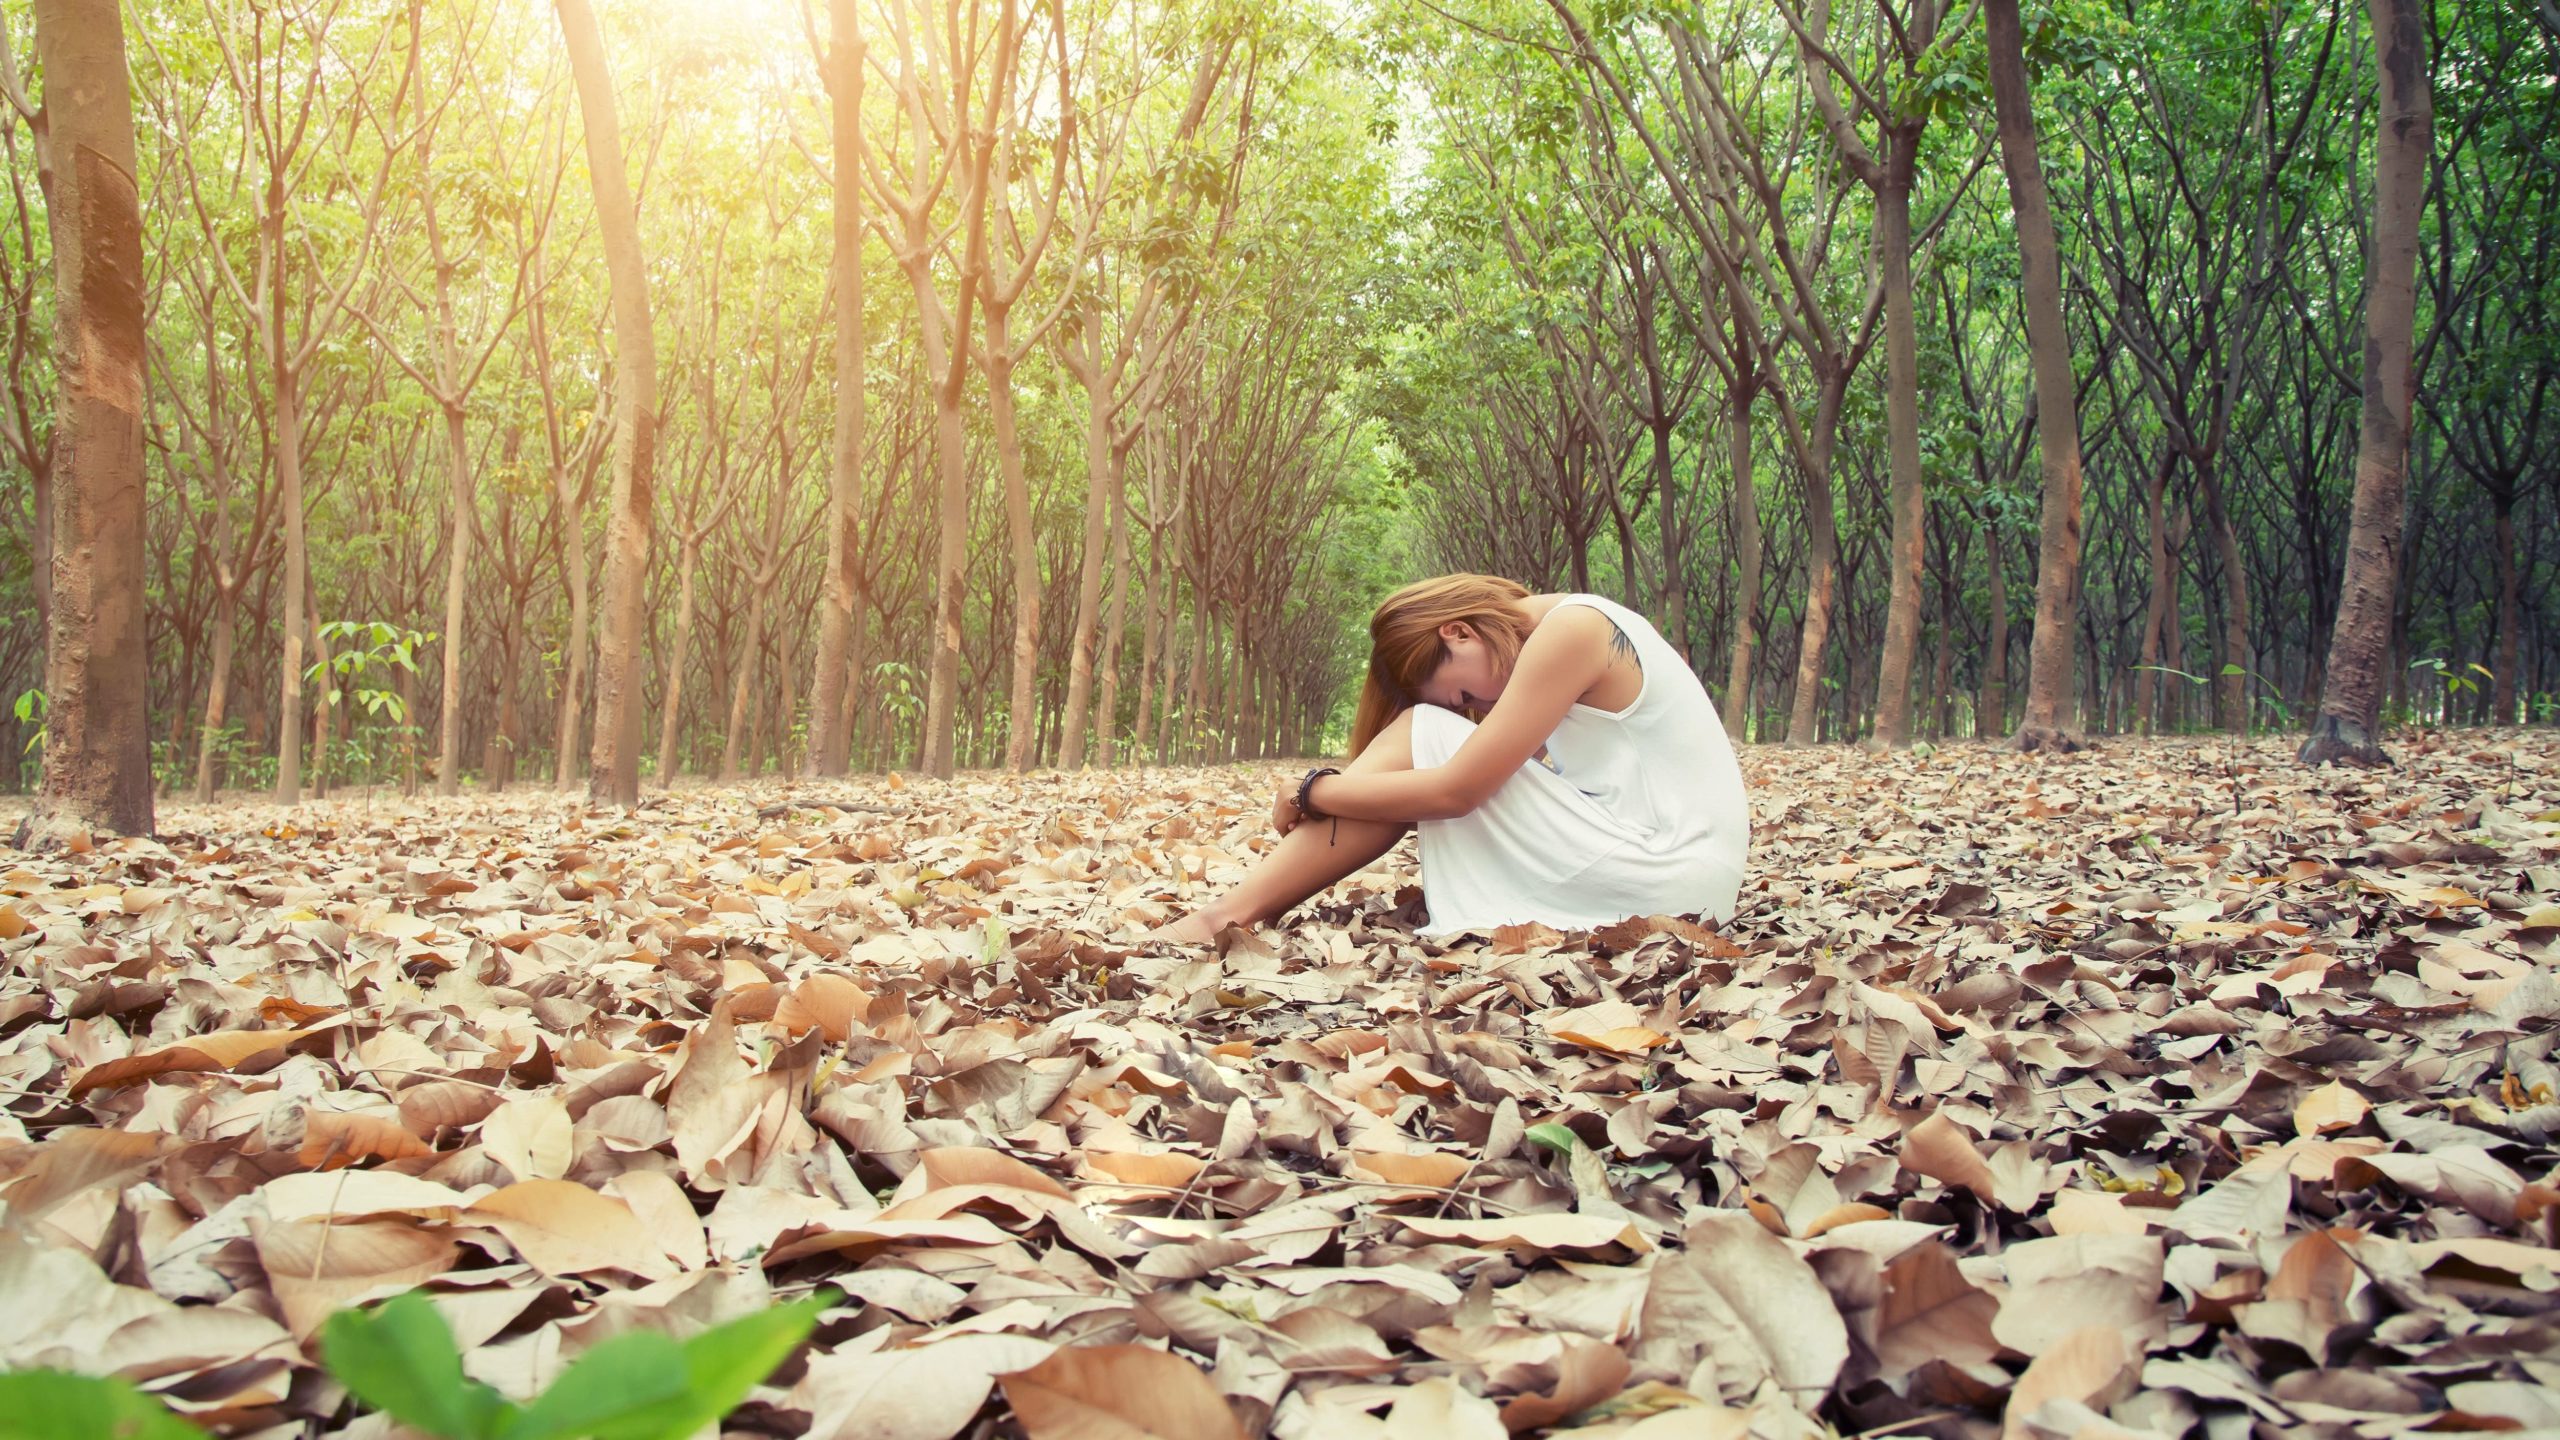 éco anxiété ou encore solastalgie d'une femme dans une forêt assise parterre dans les feuilles mortes.